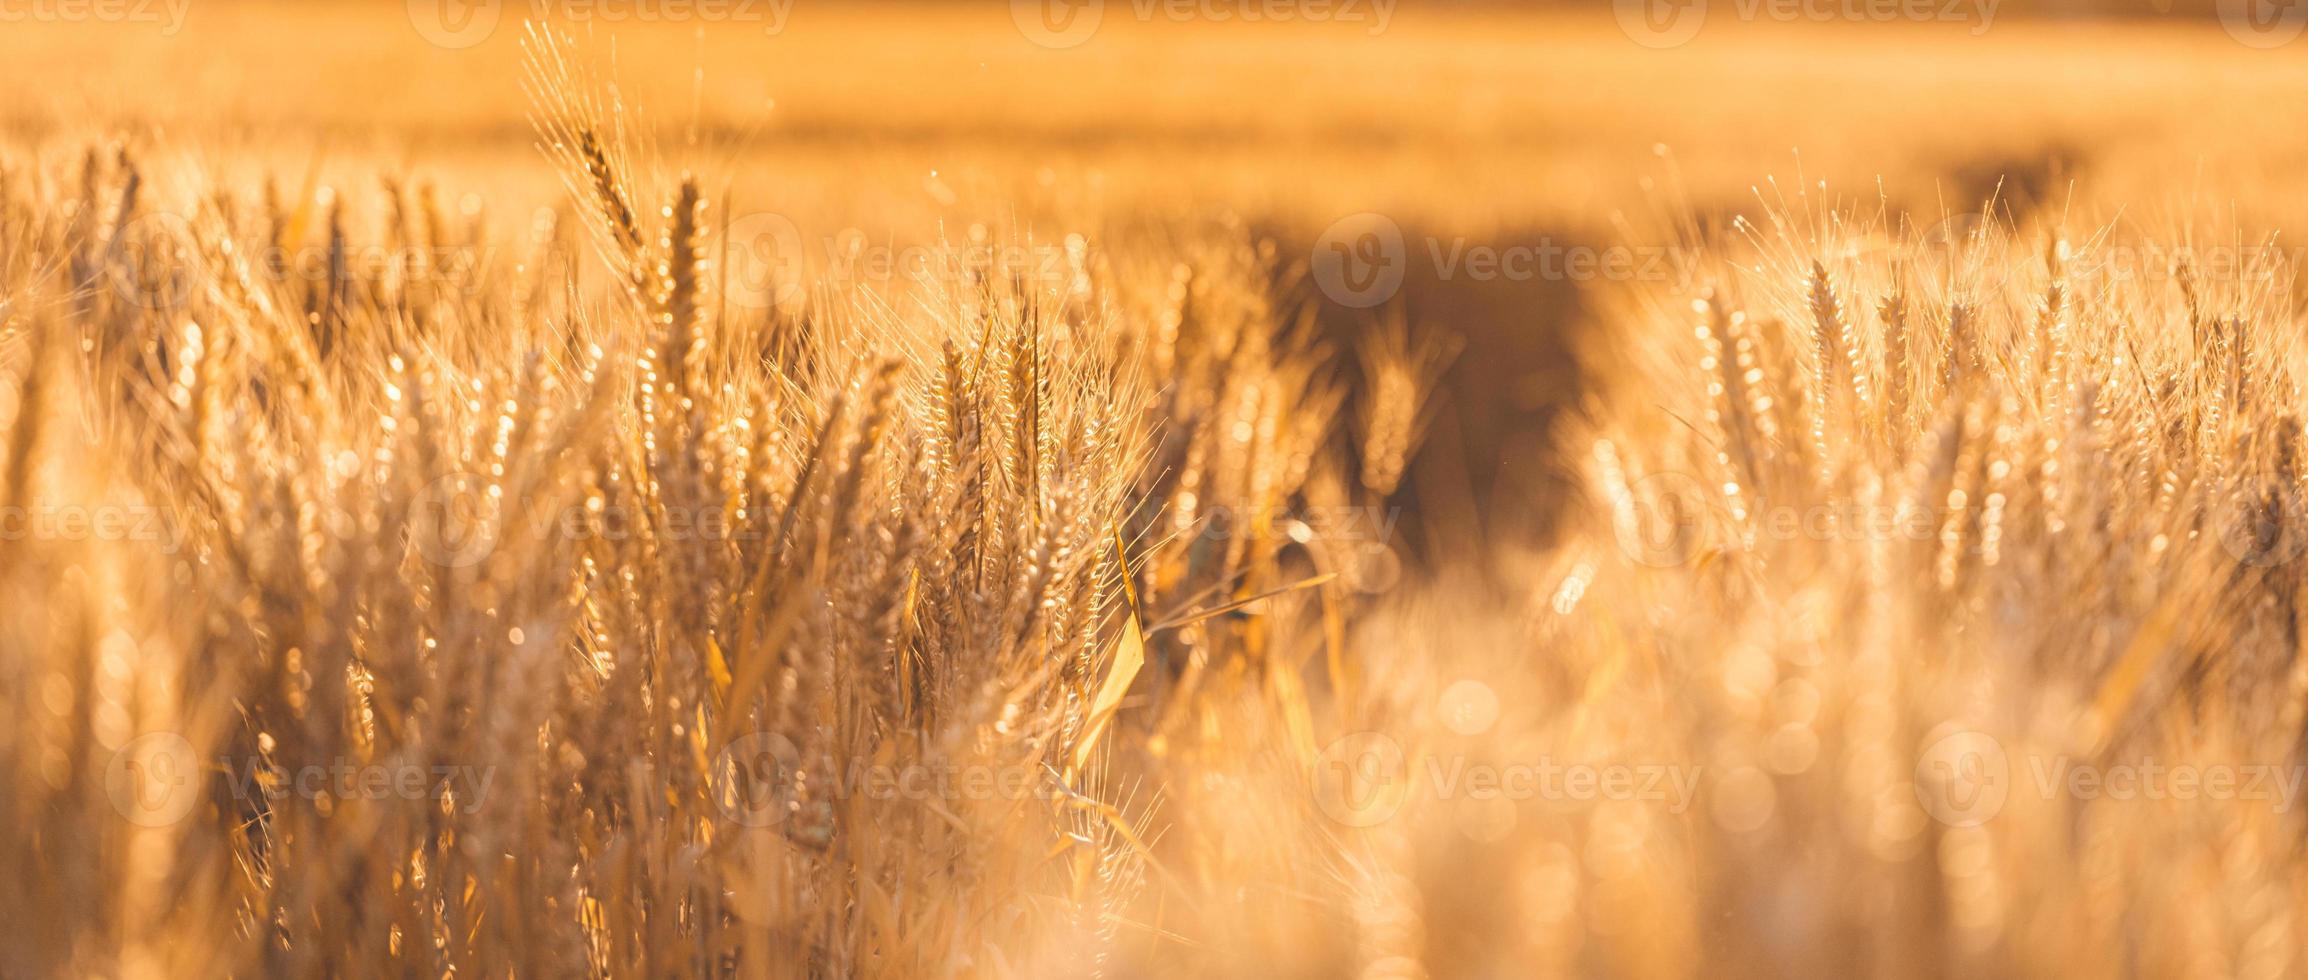 Weizenfeld Sonnenuntergang. Ohren der goldenen Weizennahaufnahme. Ländliche Landschaft unter strahlendem Sonnenlicht. nahaufnahme des reifen goldenen weizens, unscharfes goldenes erntezeitkonzept. natur landwirtschaft, sonnenstrahlen helle landwirtschaft foto